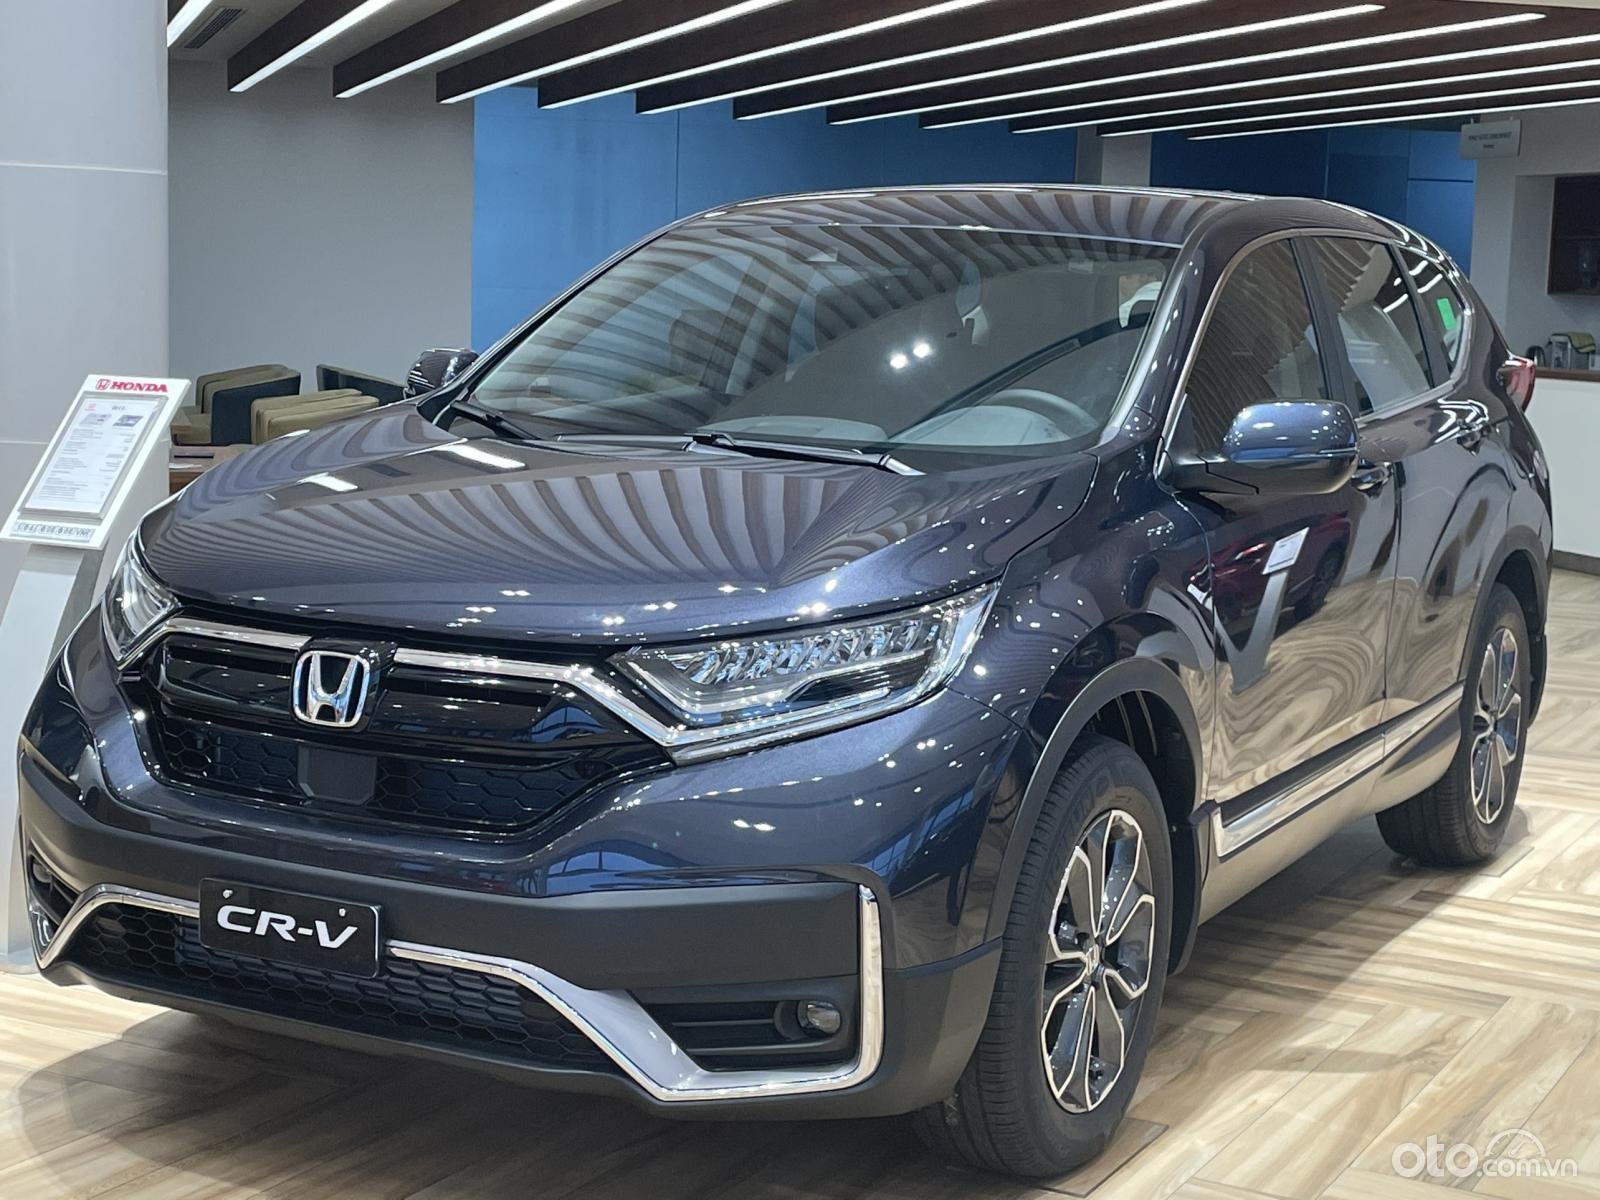 Đại lý ưu đãi tới hơn 210 triệu đồng cho khách mua xe Honda CR-V.